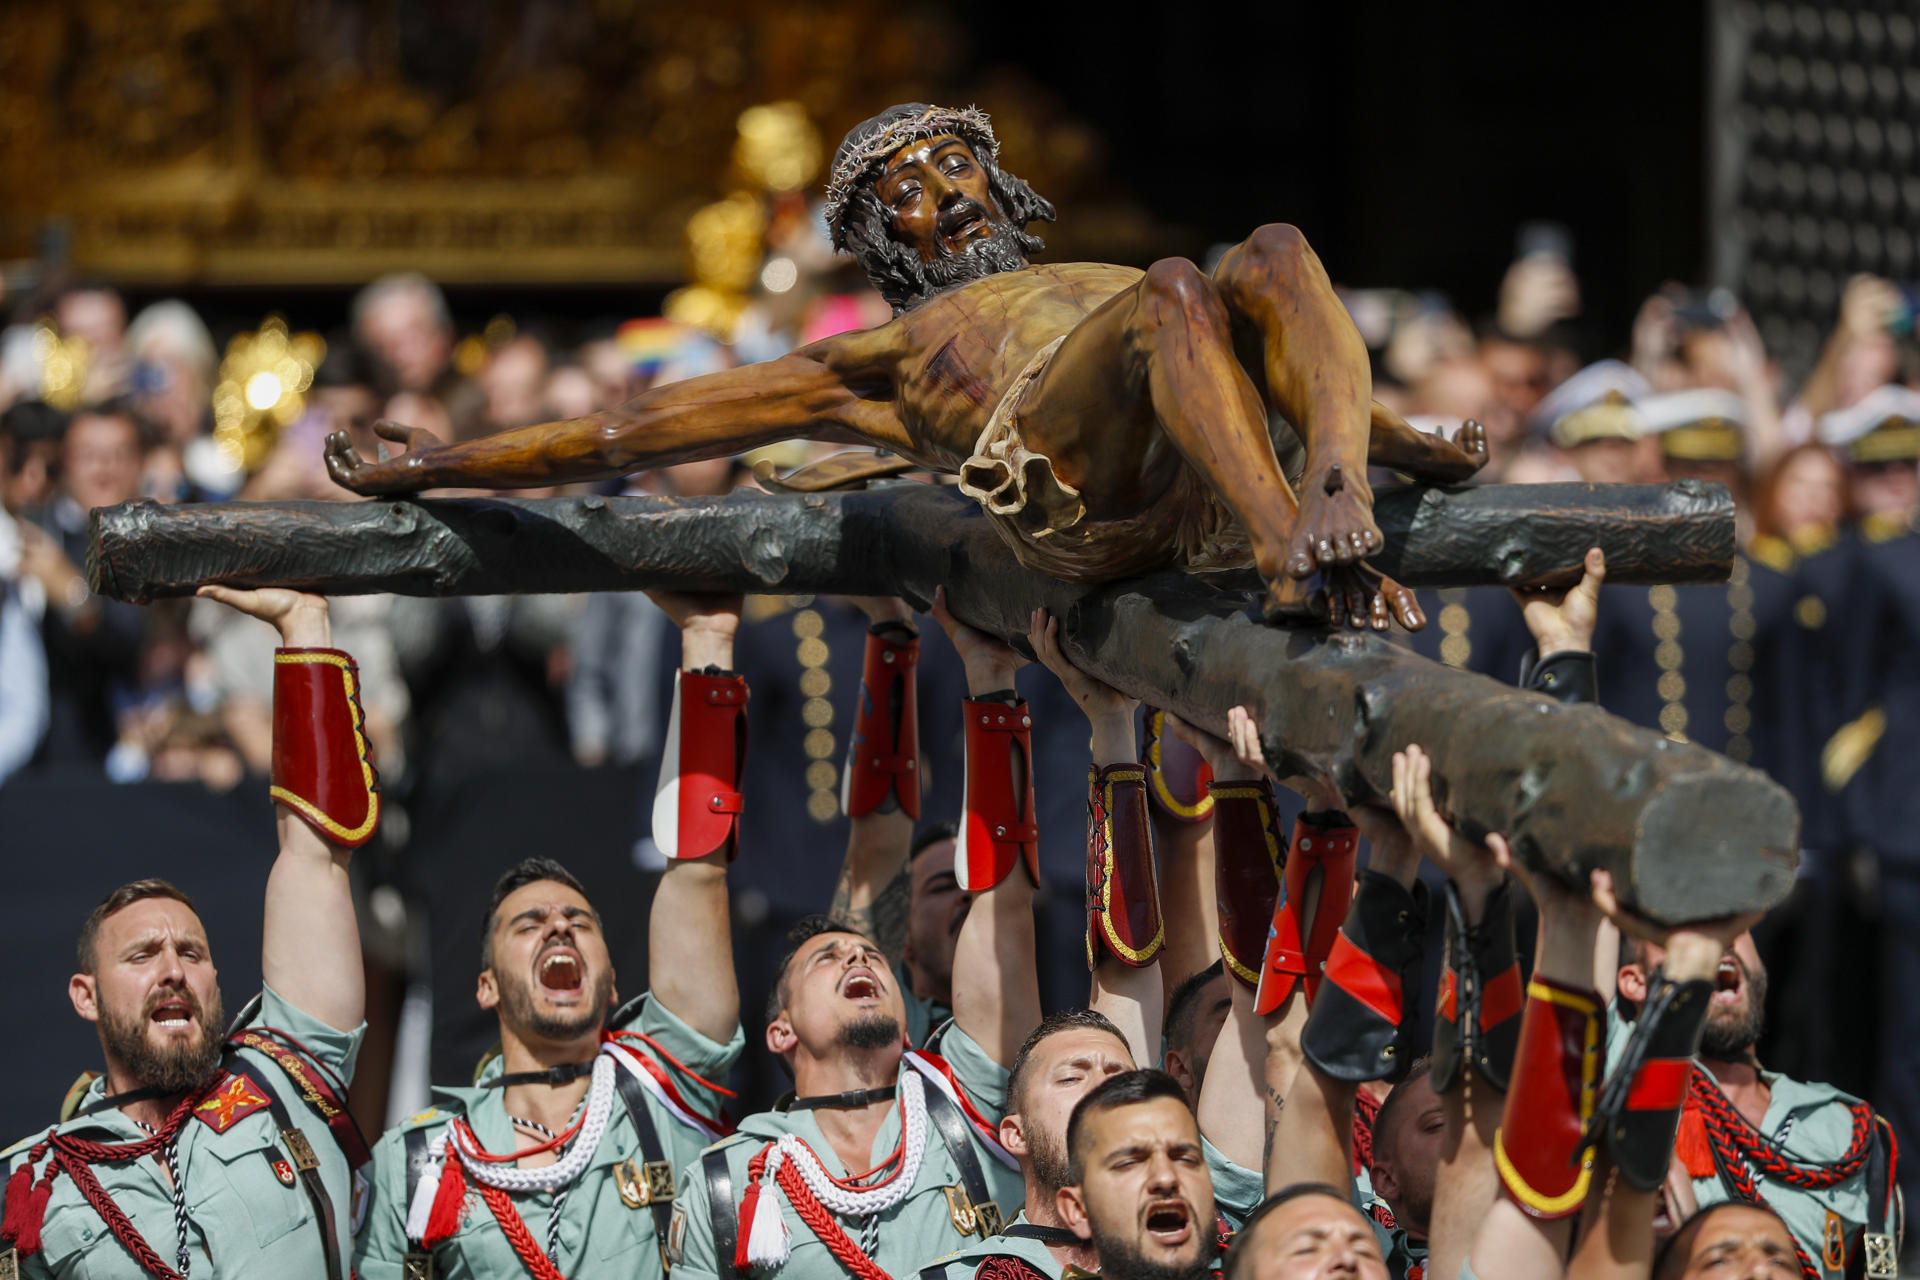 La Semana Santa inspira en España procesiones cargadas de sentimiento y arte